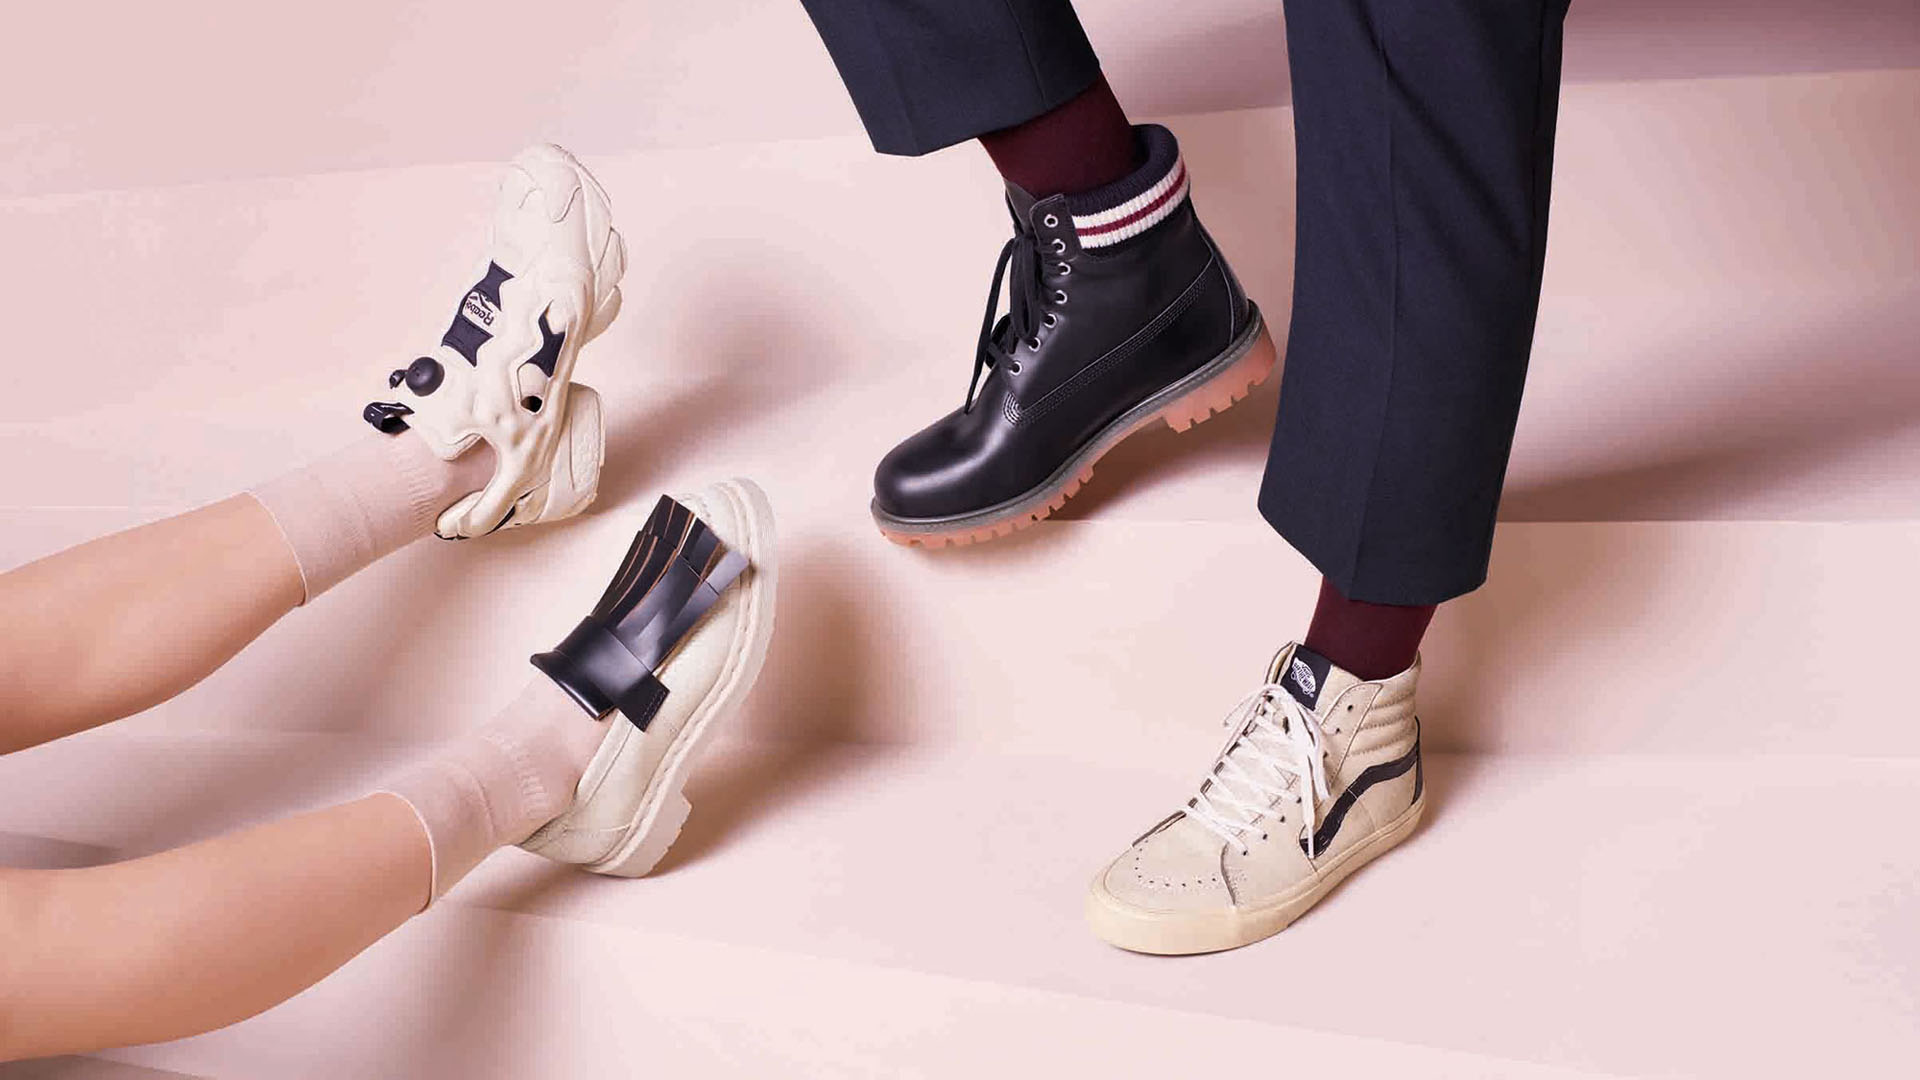 La reconocida marca de calzados lanzará su colección Step Into Marni para reconocer el diseño y calidad de marcas como Timberland y Reebok